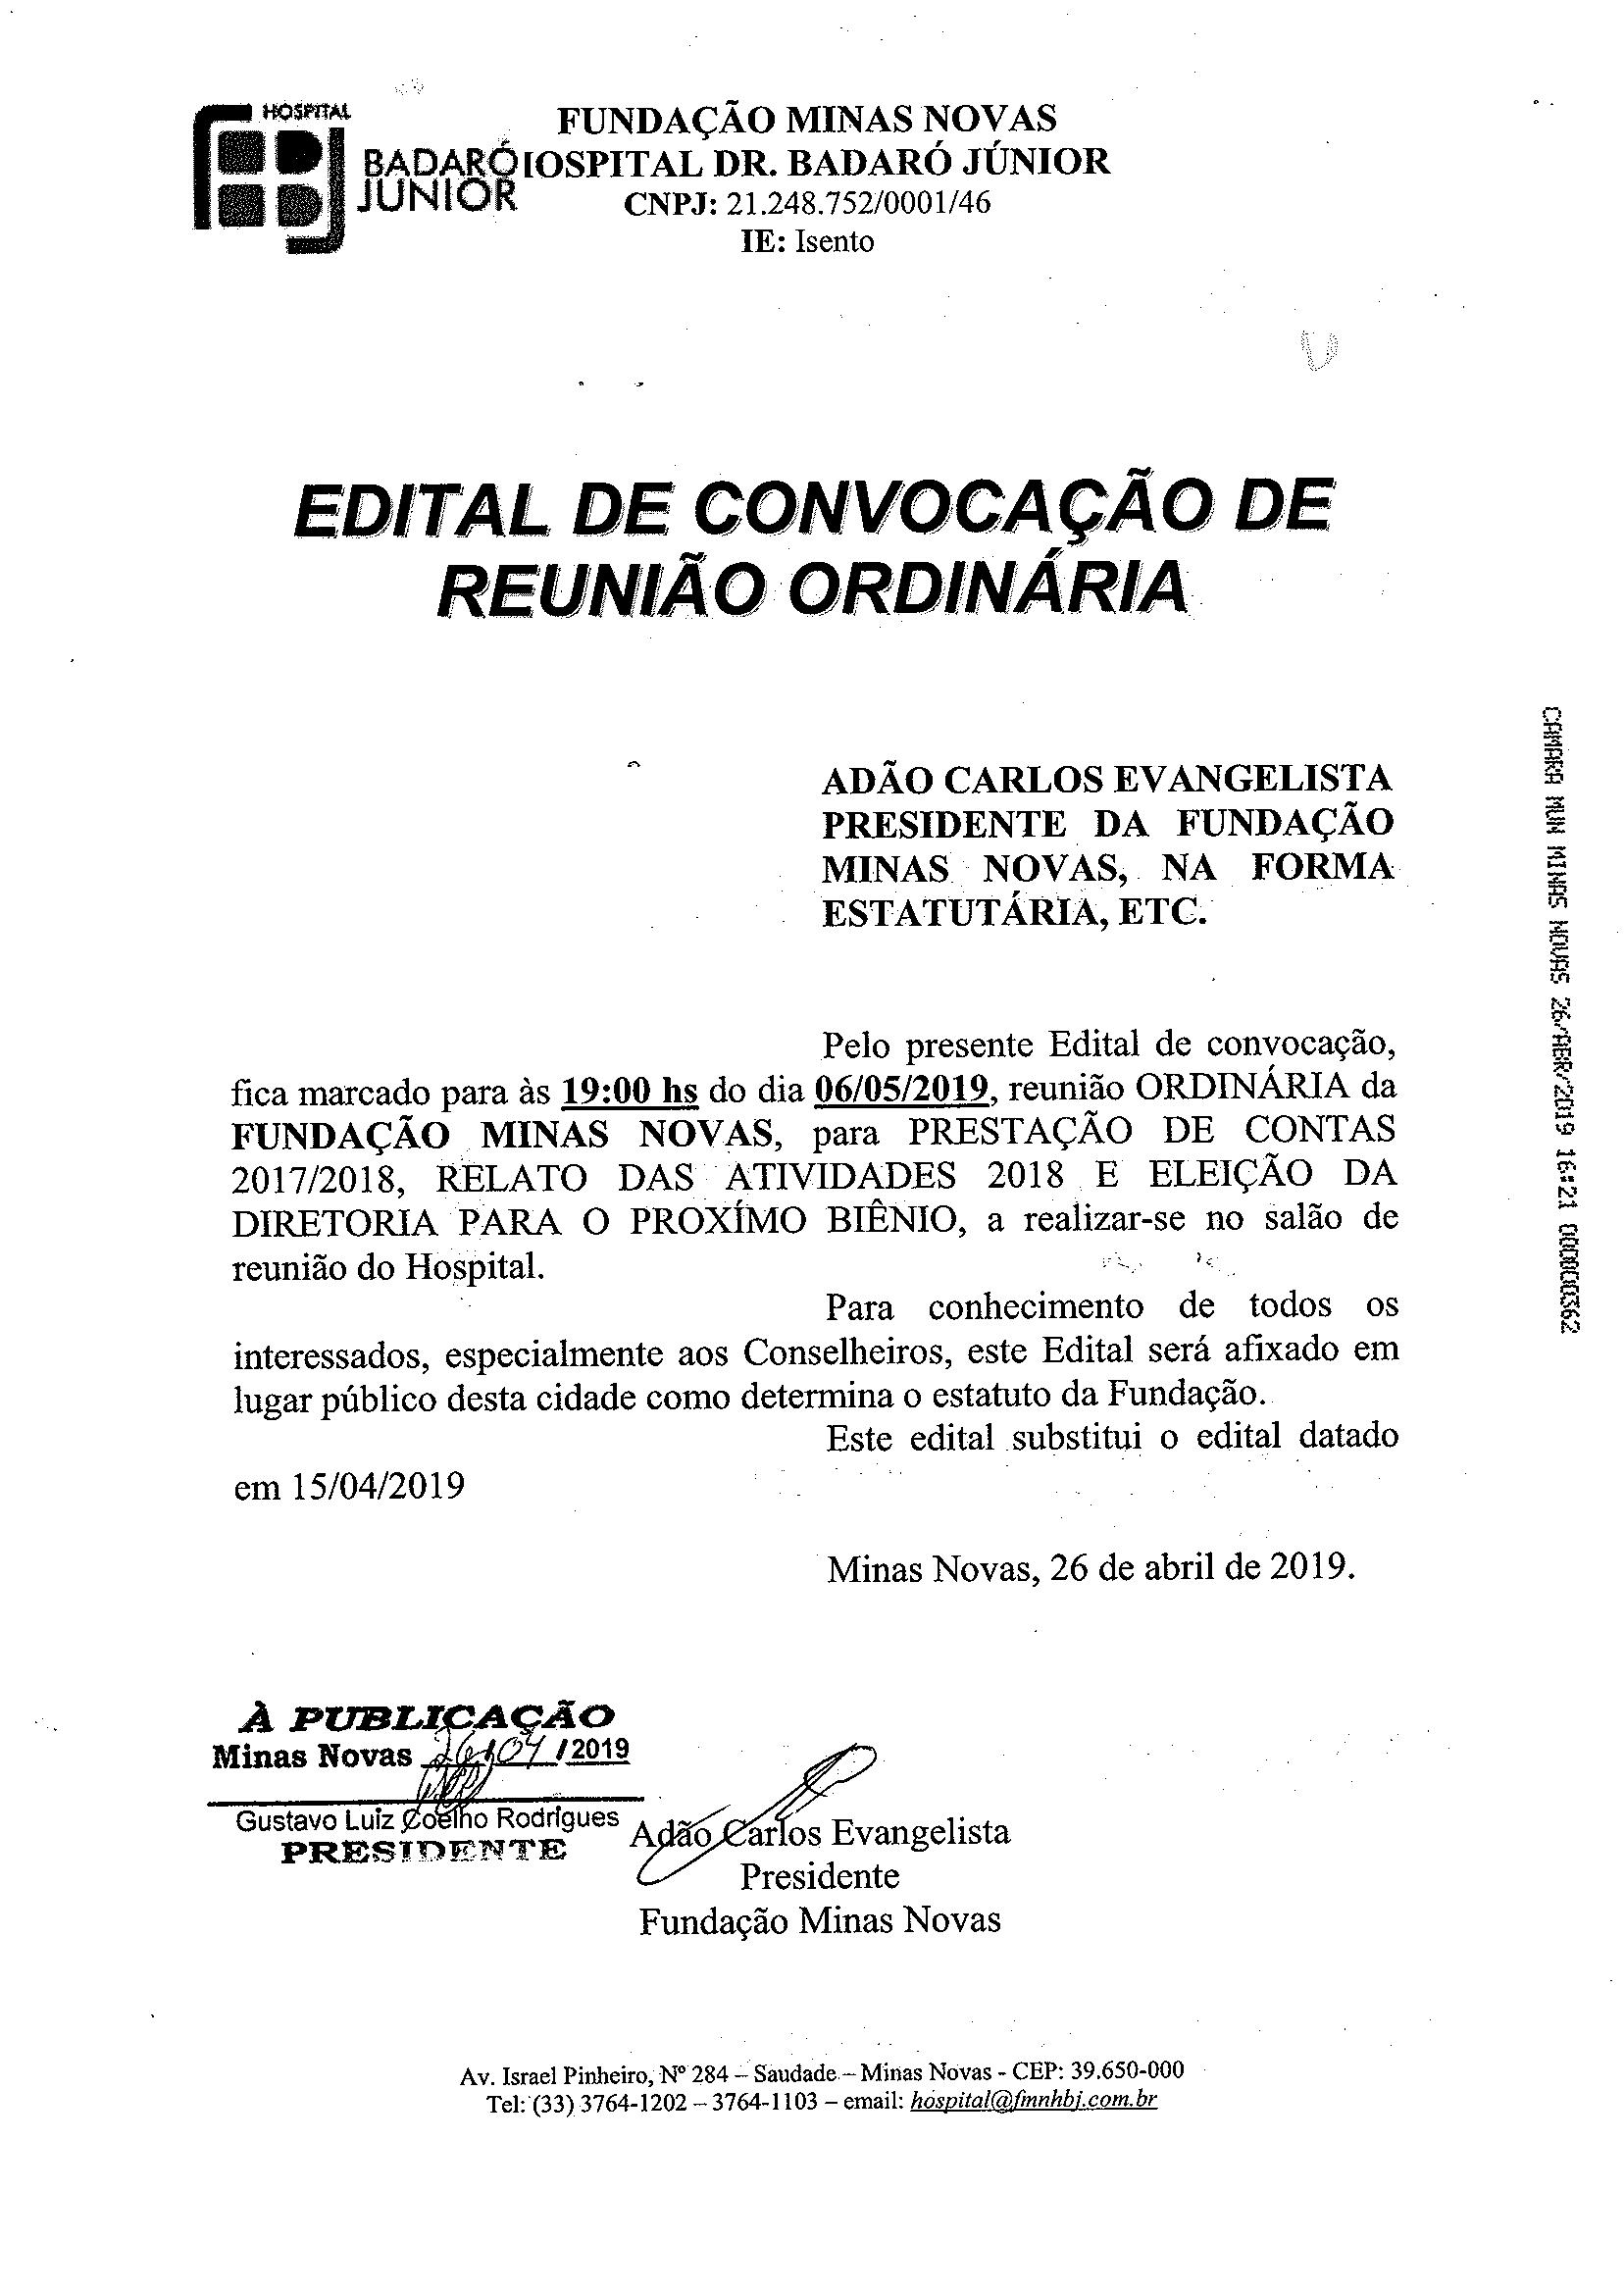 Edital de Convocação de Reunião Ordinária da Fundação Minas Novas - Hospital Dr. Badaró Júnior